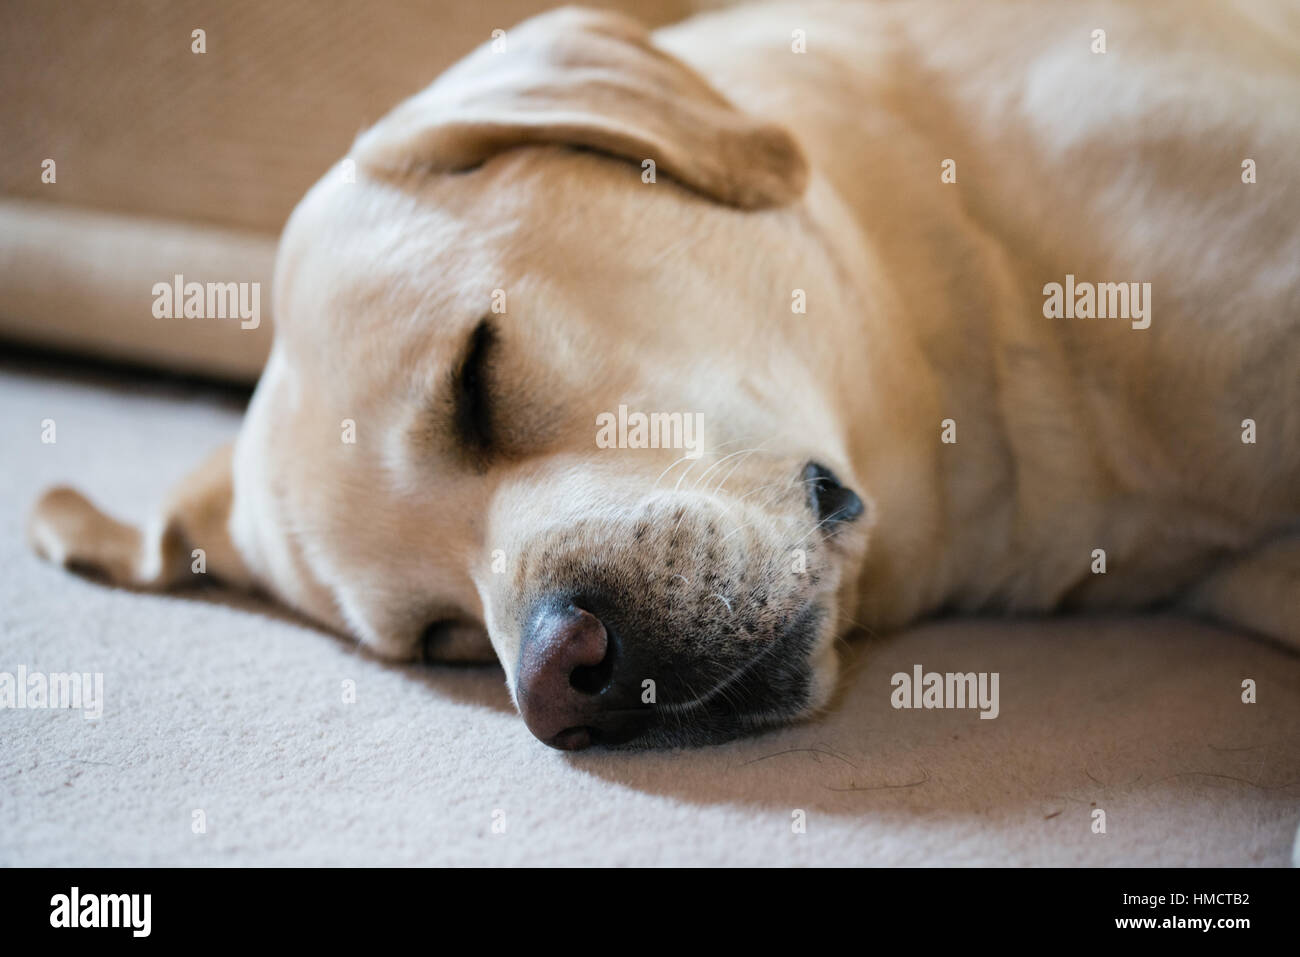 A male yellow Labrador sleeping on a cream carpet Stock Photo